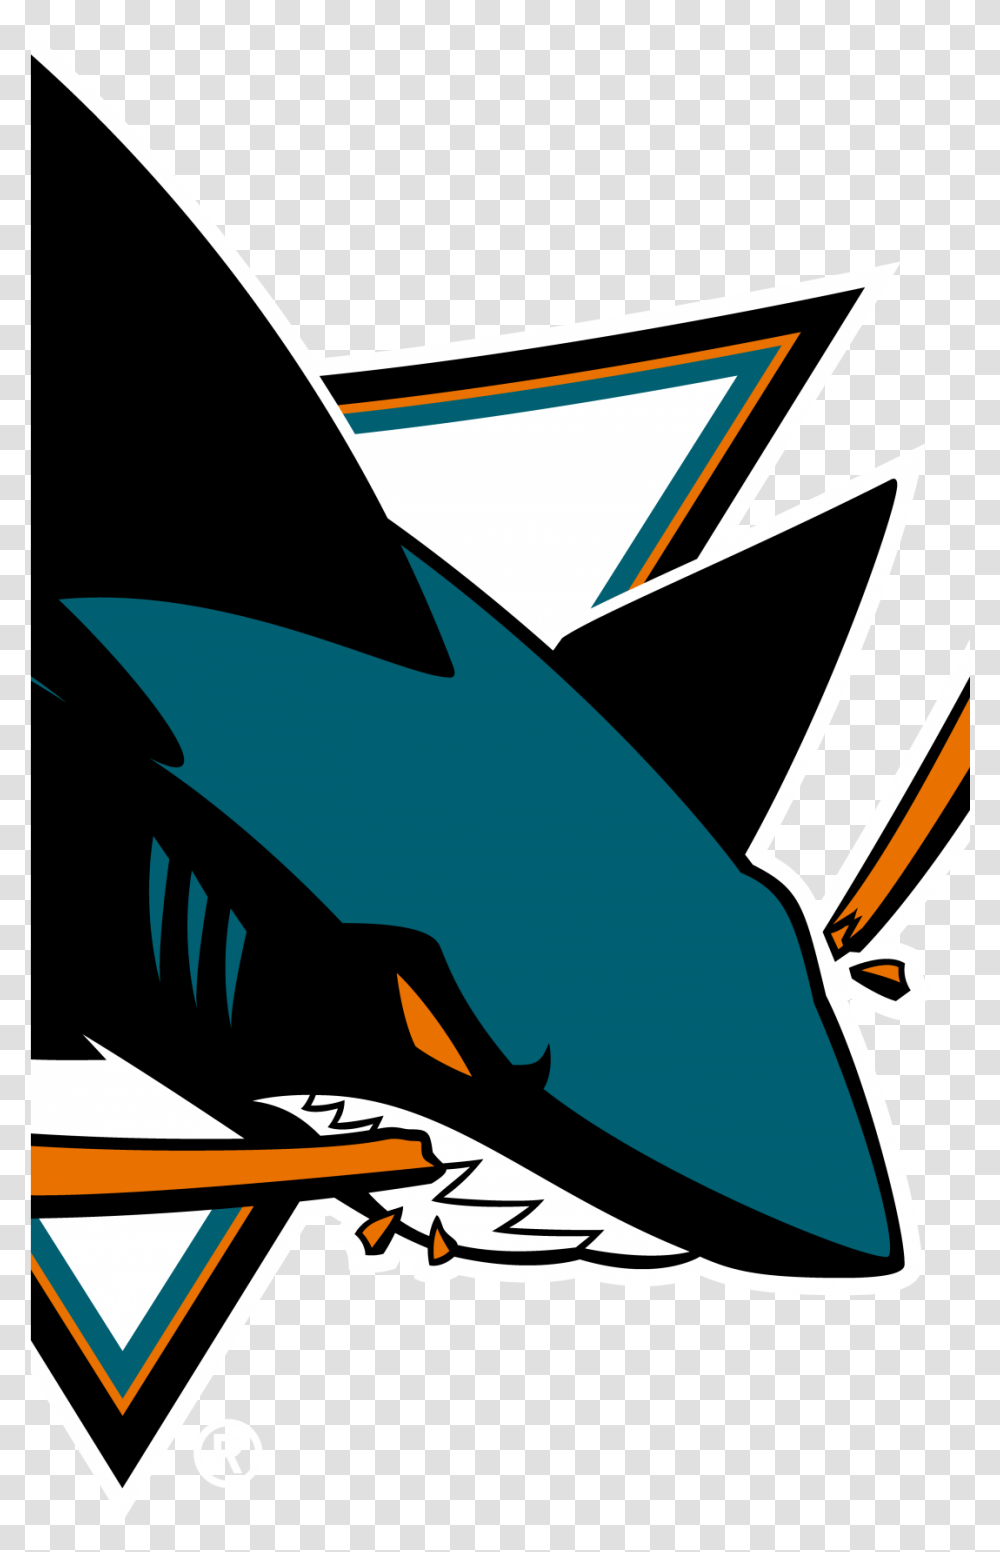 San Jose Sharks Appleiphone 6 750x1334 Wallpapers San Jose Sharks Logo, Graphics, Art, Symbol, Trademark Transparent Png